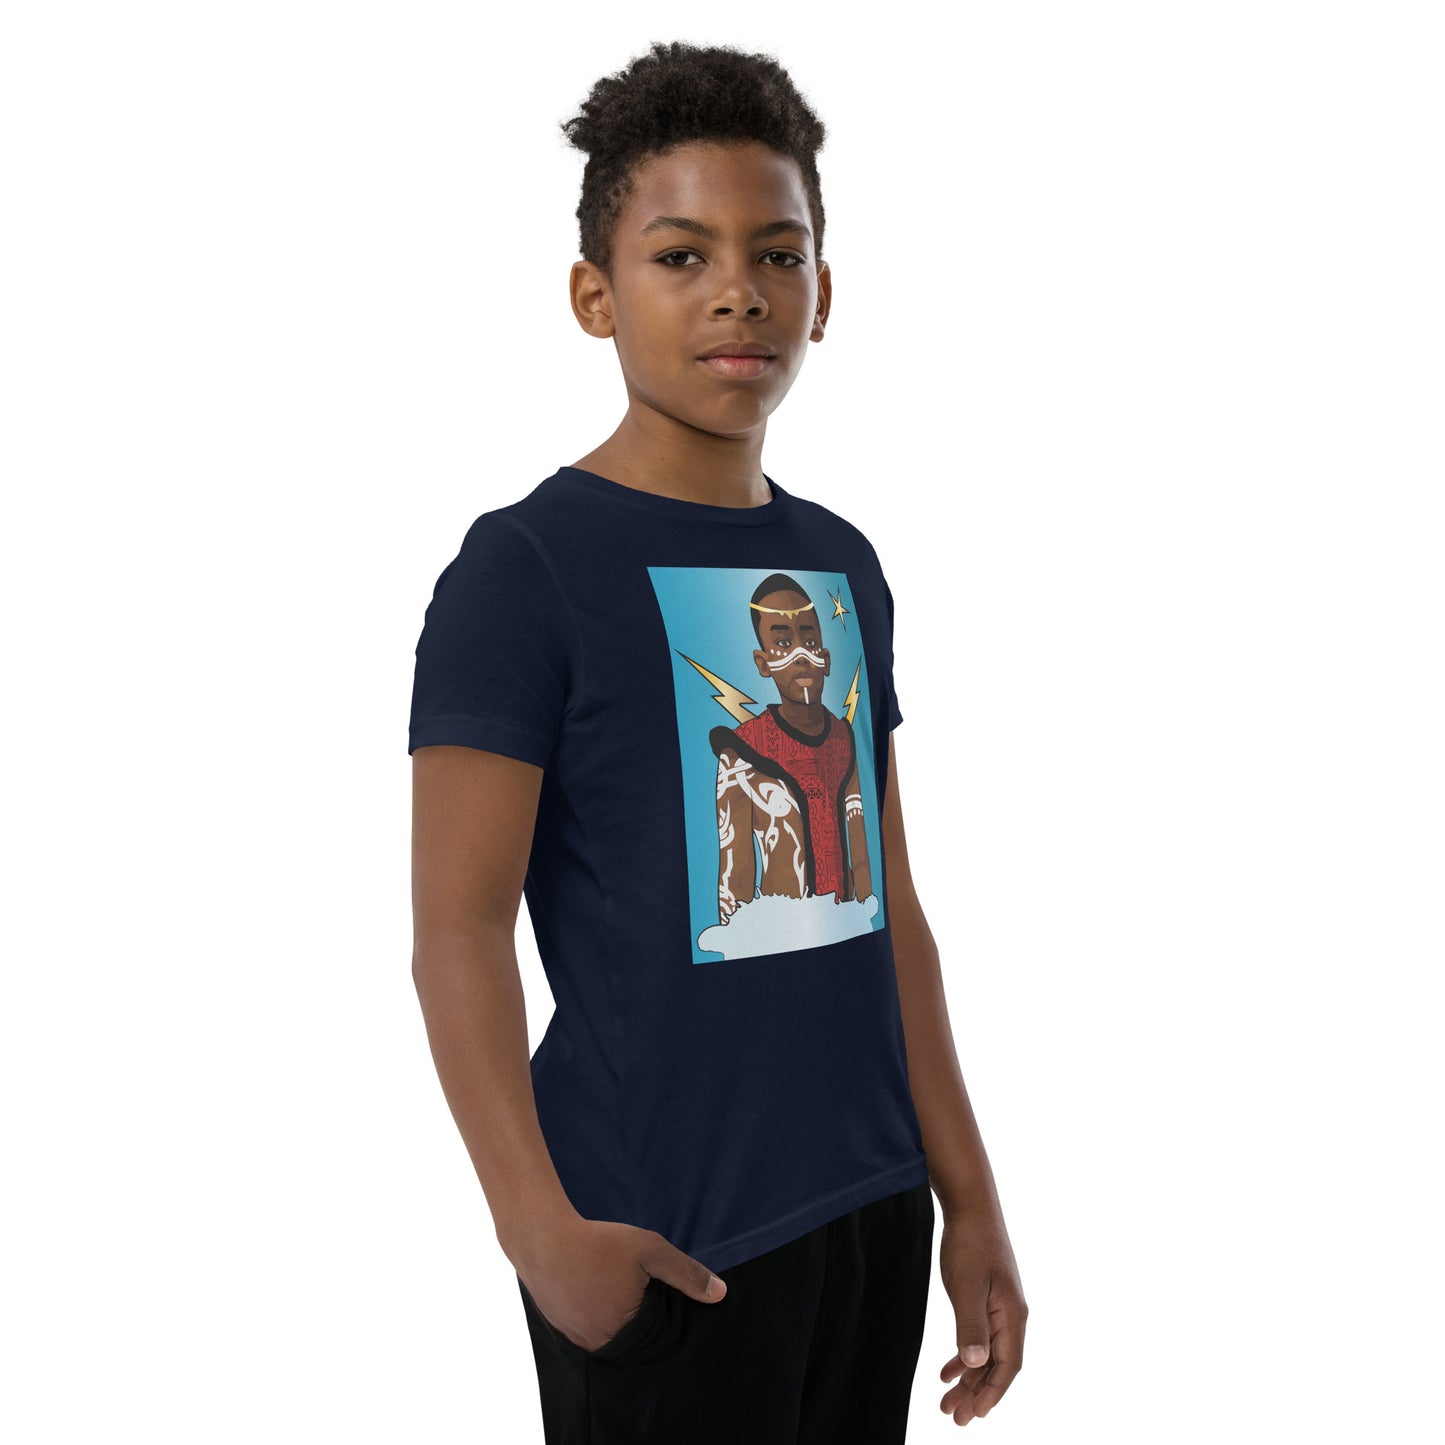 AfriBix Prince Youth Short Sleeve T-Shirt